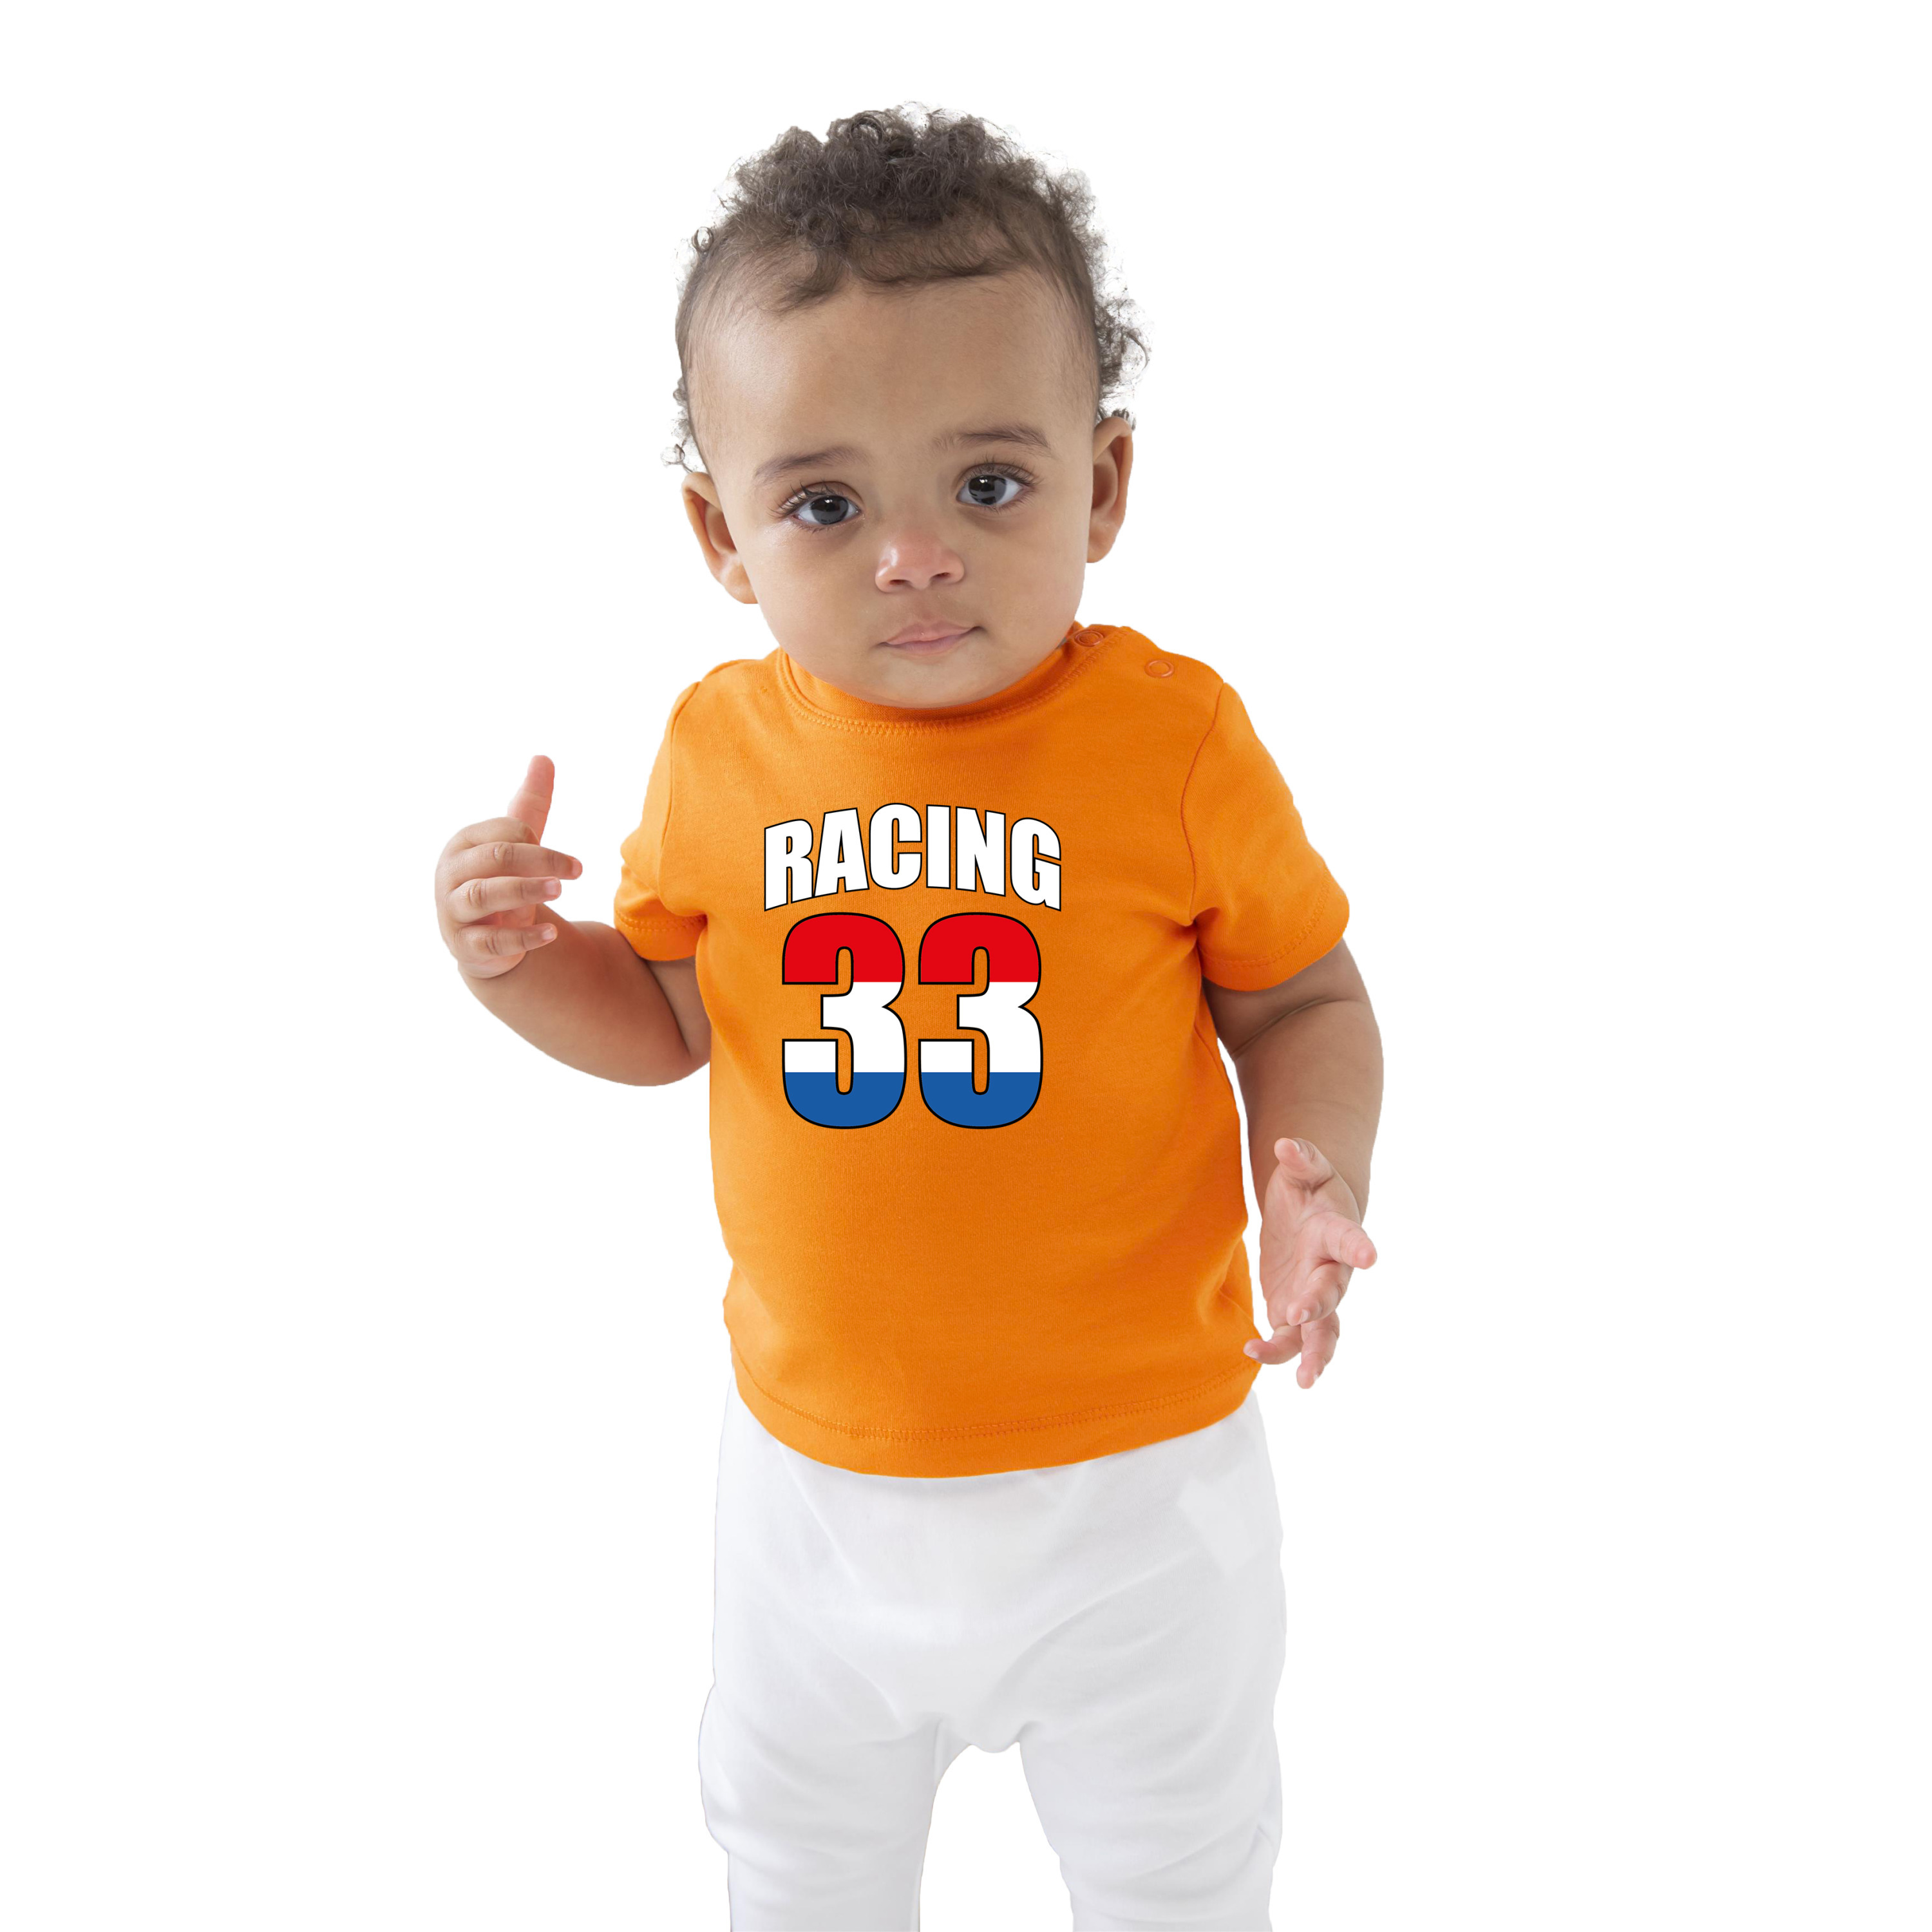 Oranje fan shirt-kleding Max racing 33 voor baby-peuters